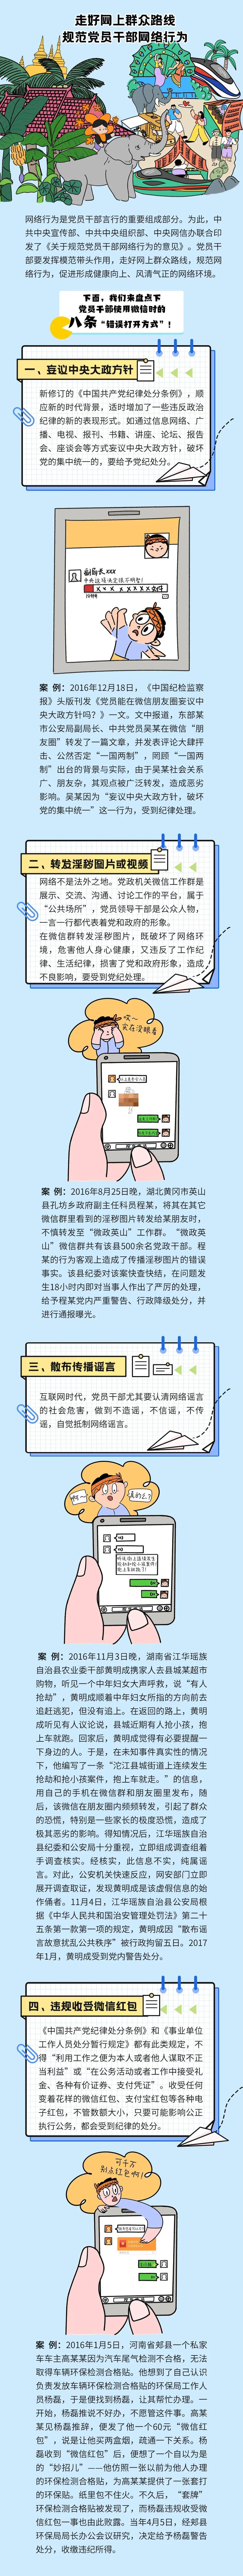 中国共产党党员网络行为规定1.jpg